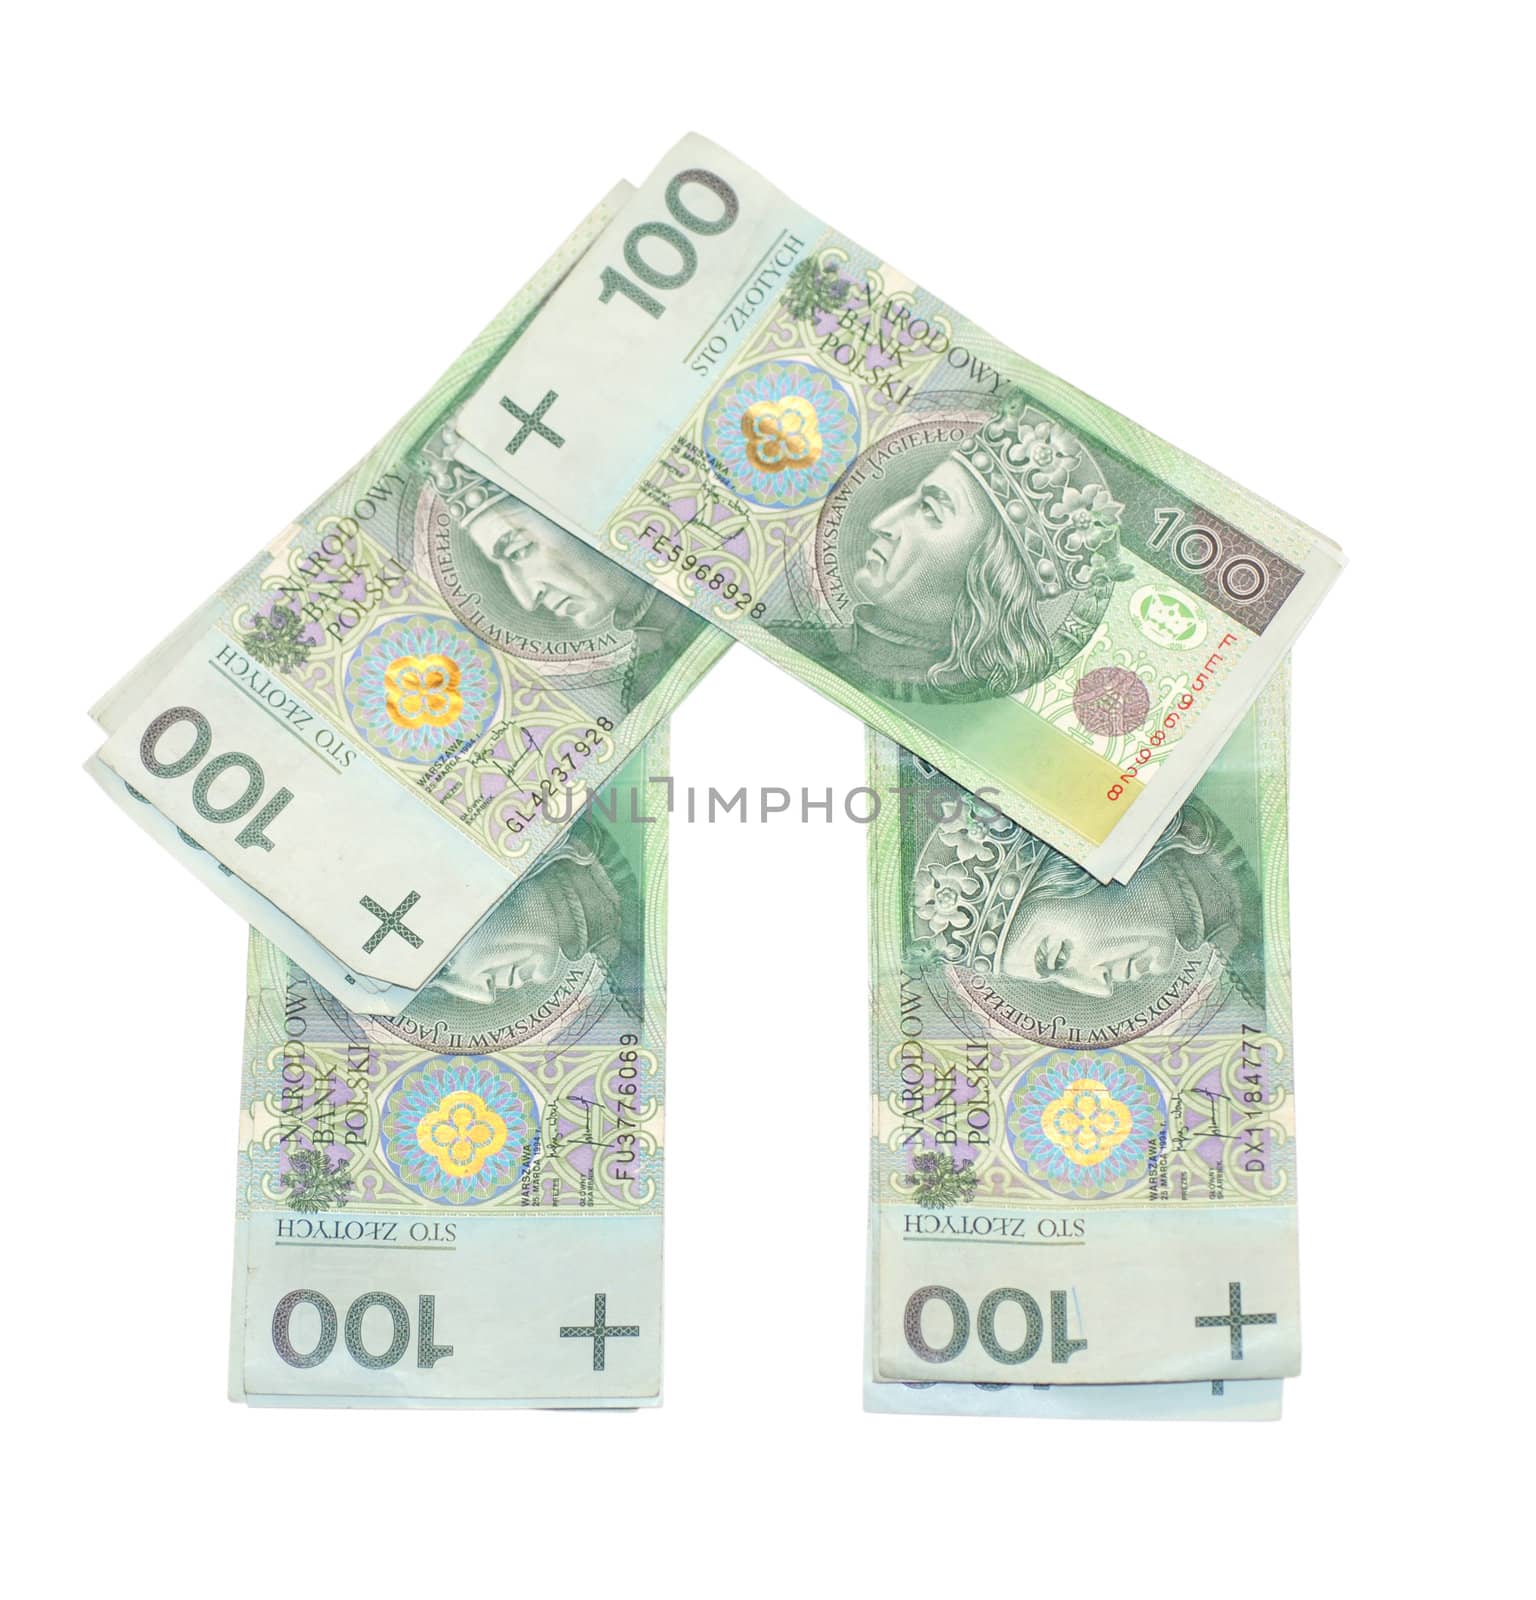 House built with the money. by wojciechkozlowski